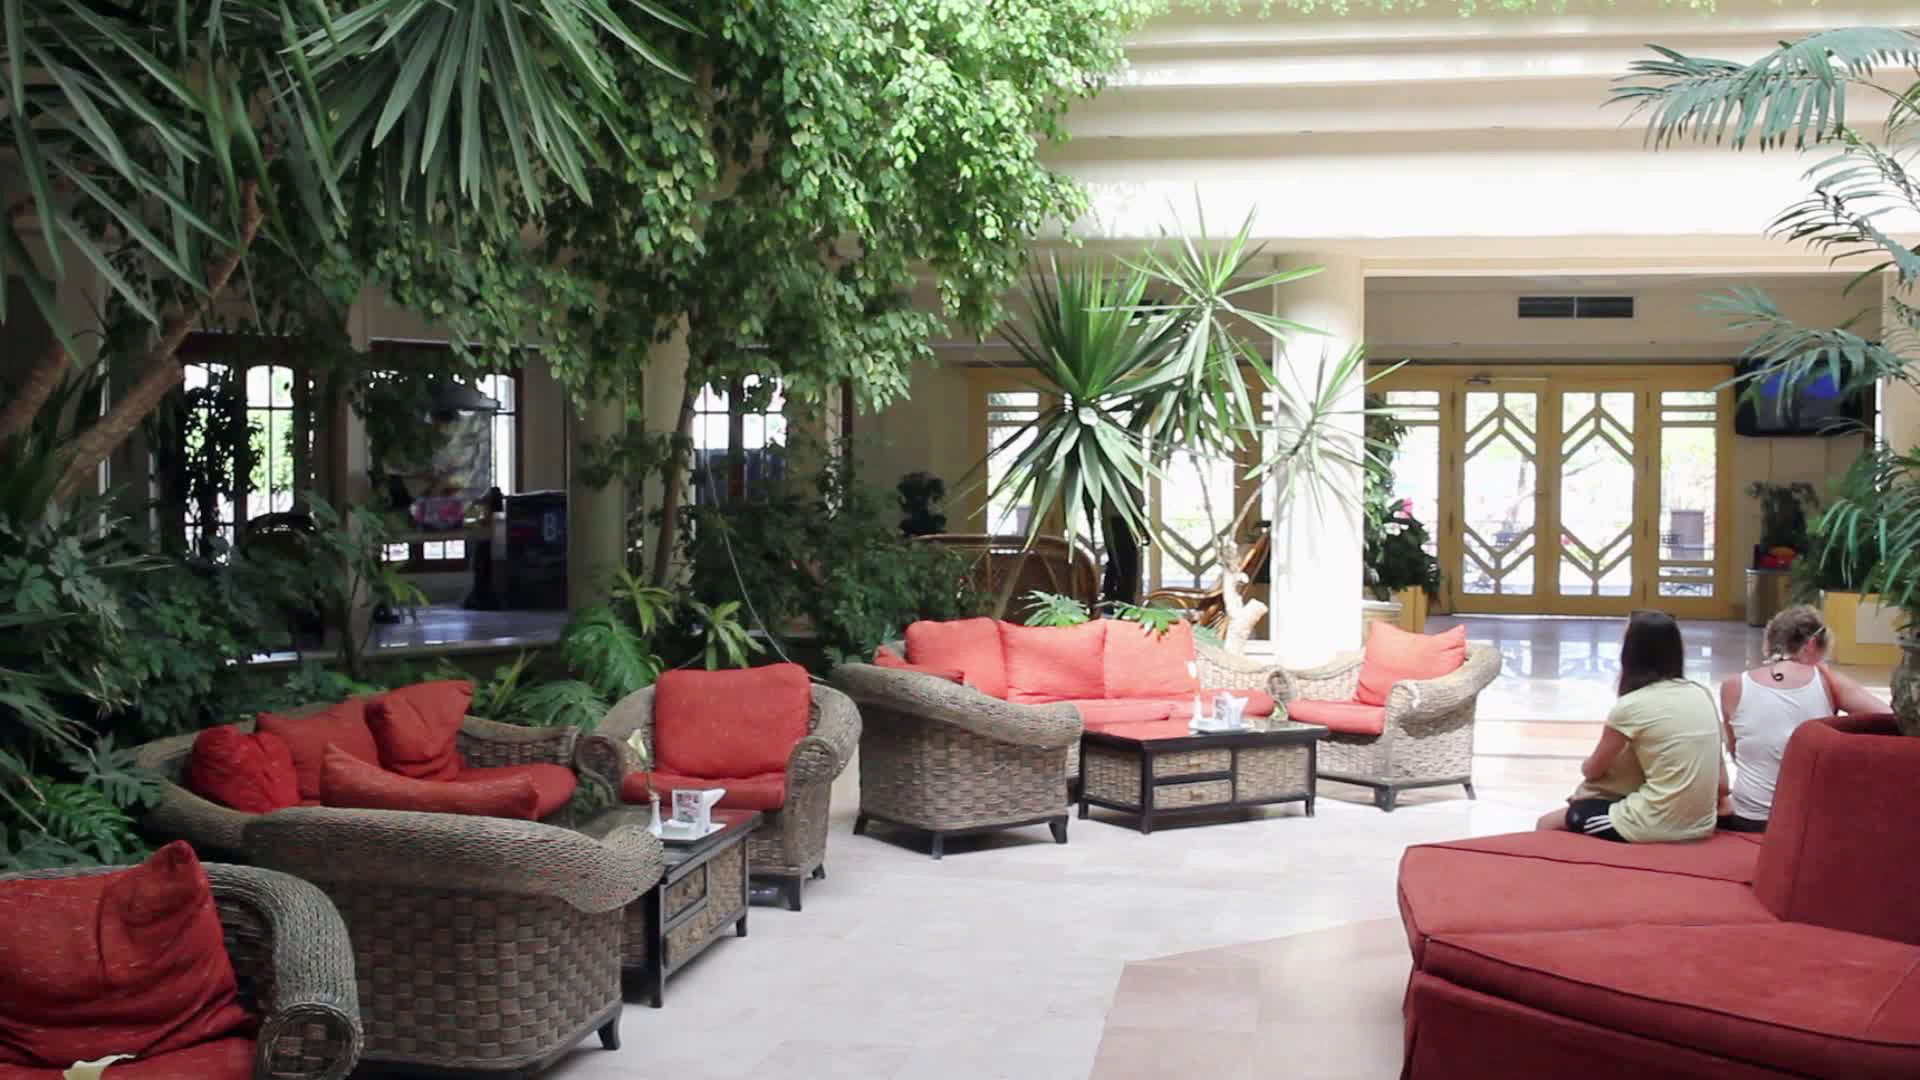 The Grand Hotel Hurghada